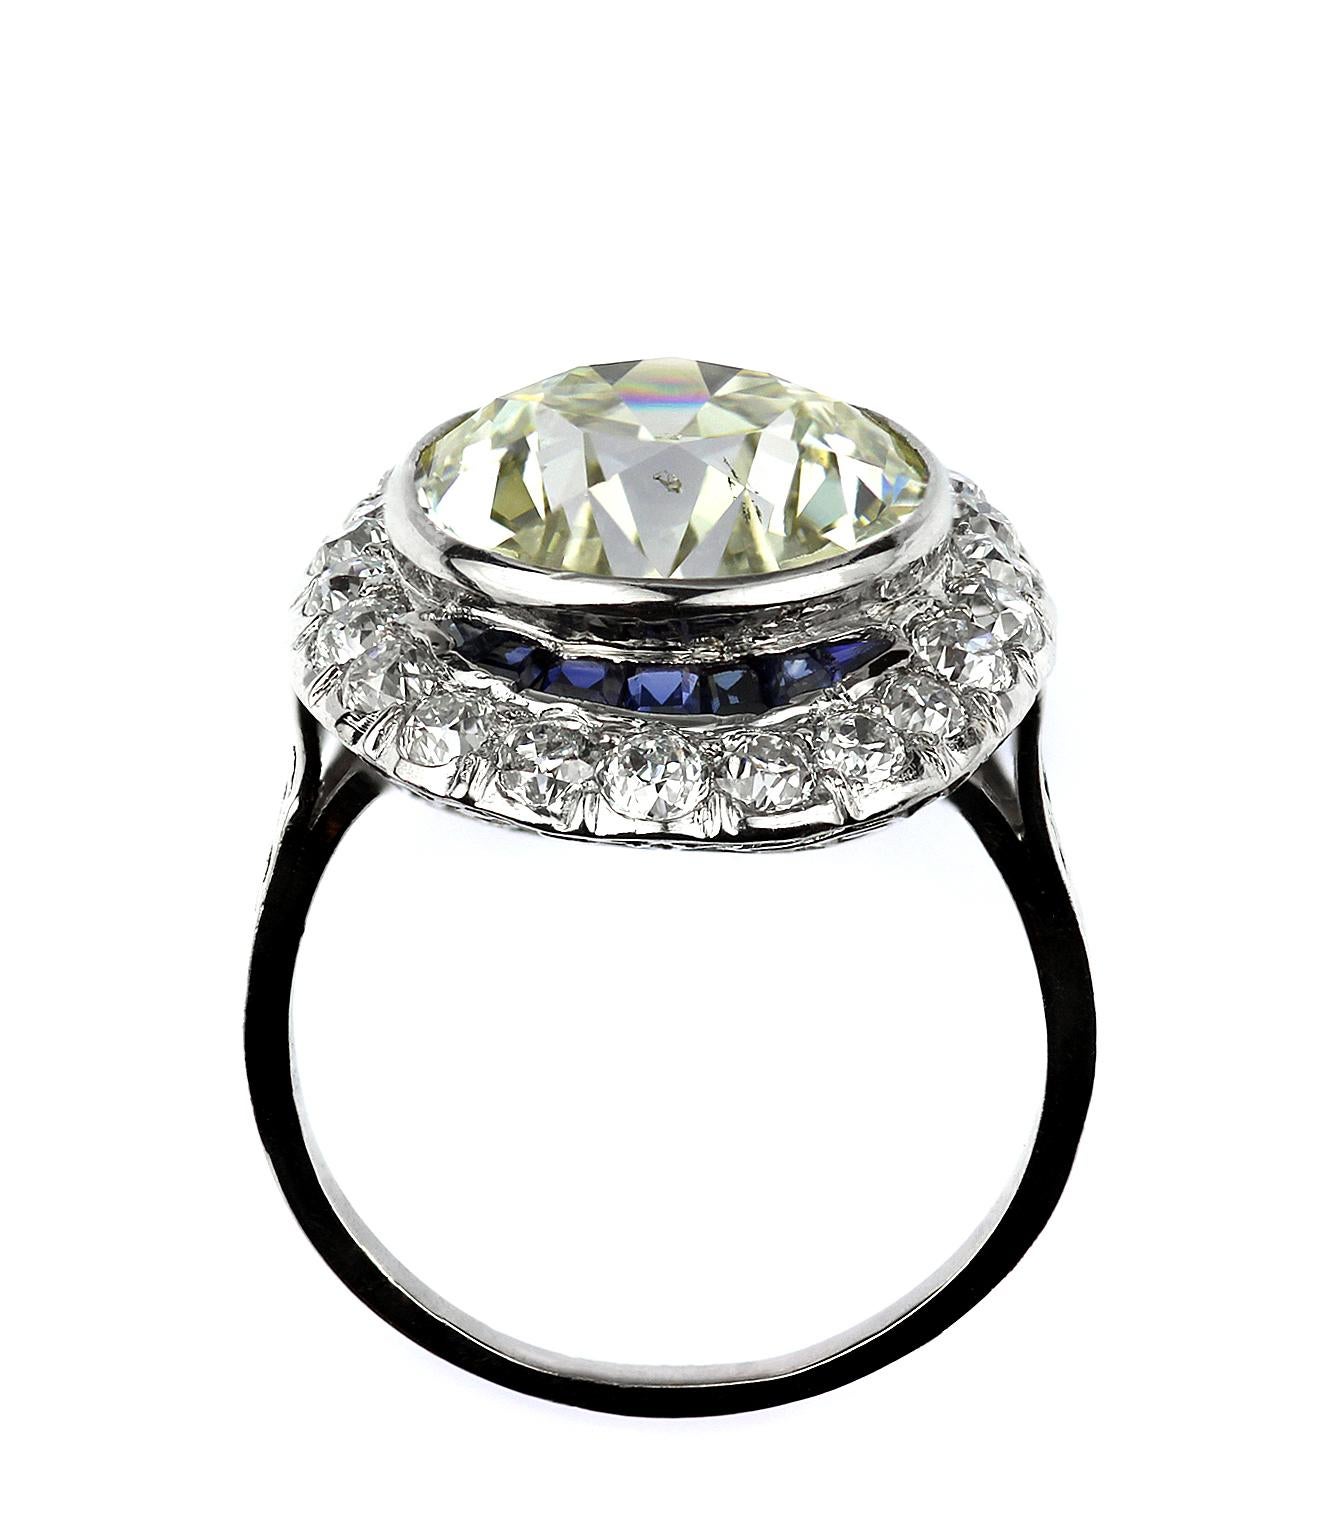 Antique Big Diamond 6.6 ct with Sapphire Ring in Platinum 1